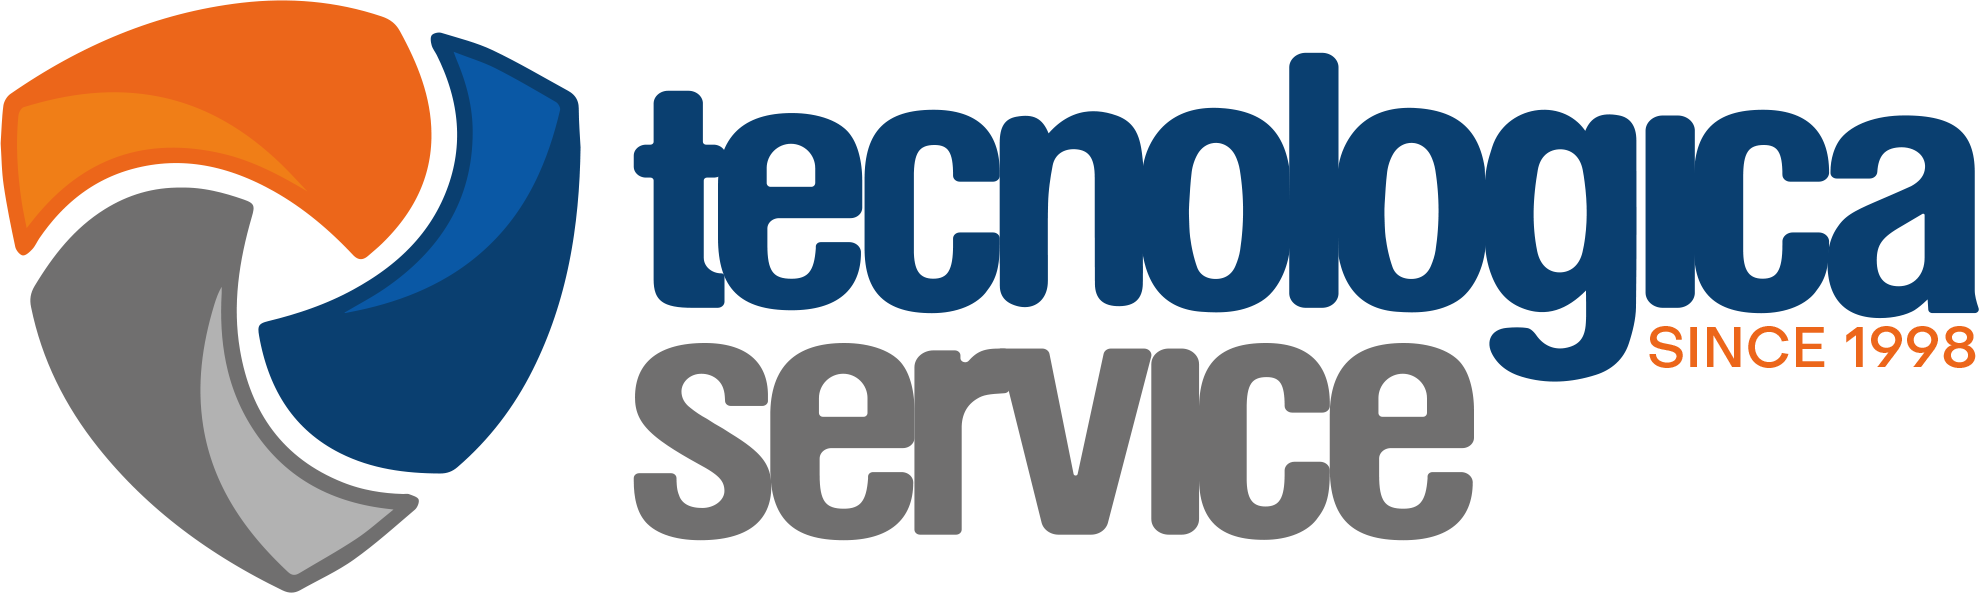 Tecnologica Service